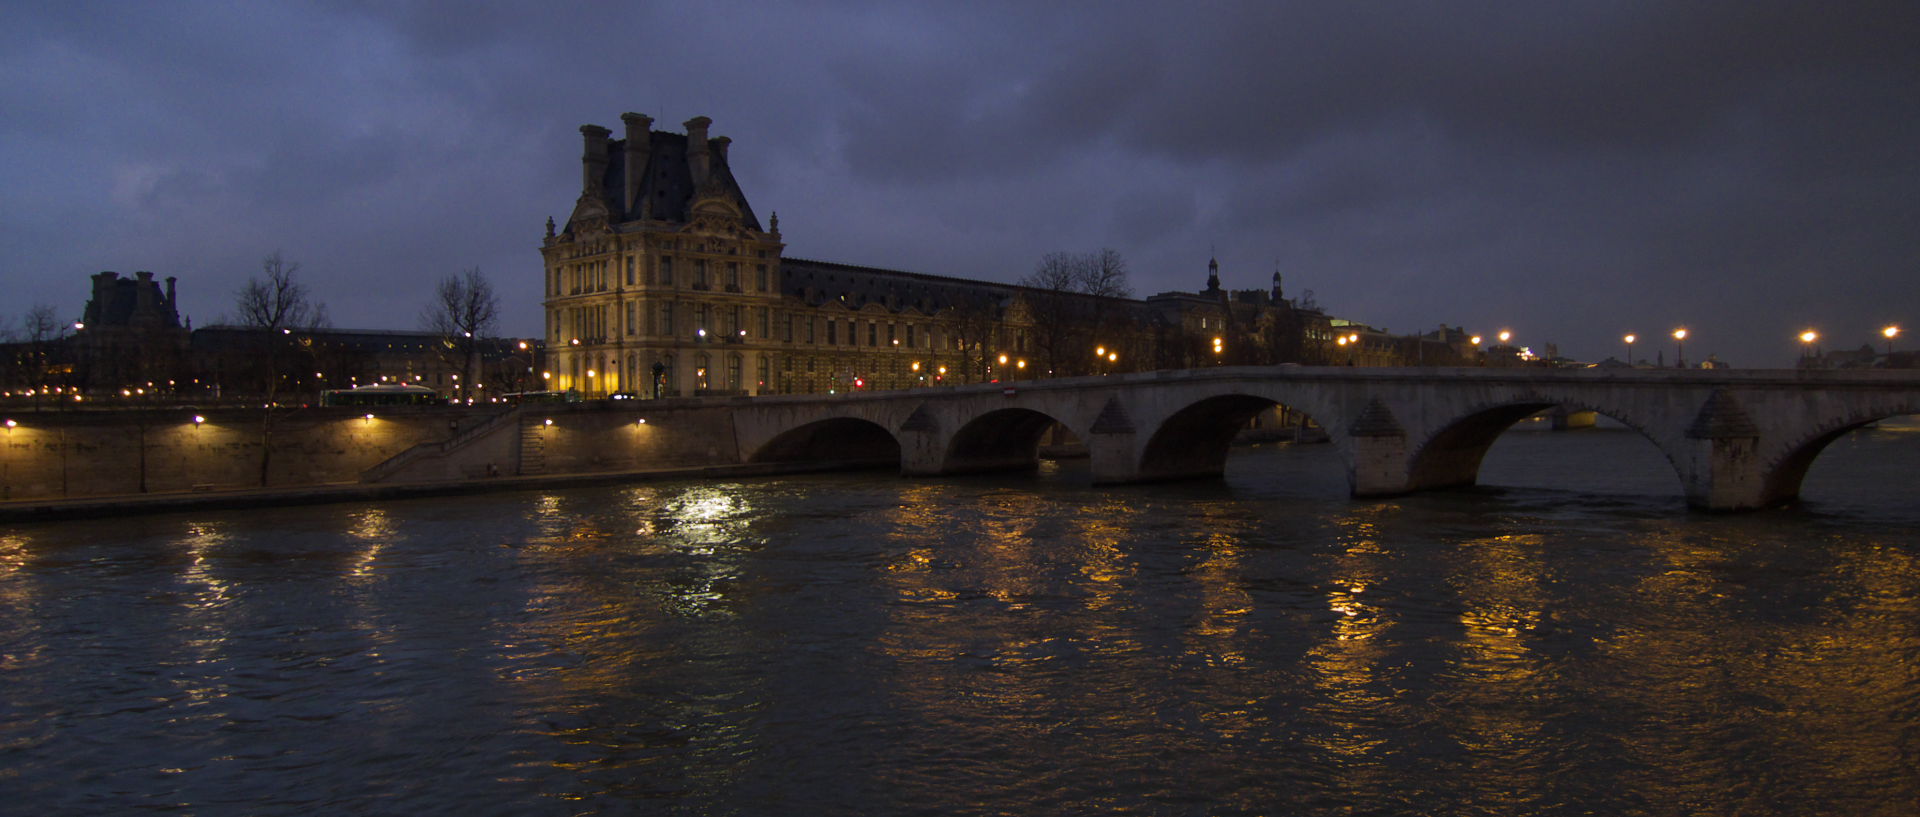 Mercredi 18 février 2009, 18:33, pont Royal, à Paris.